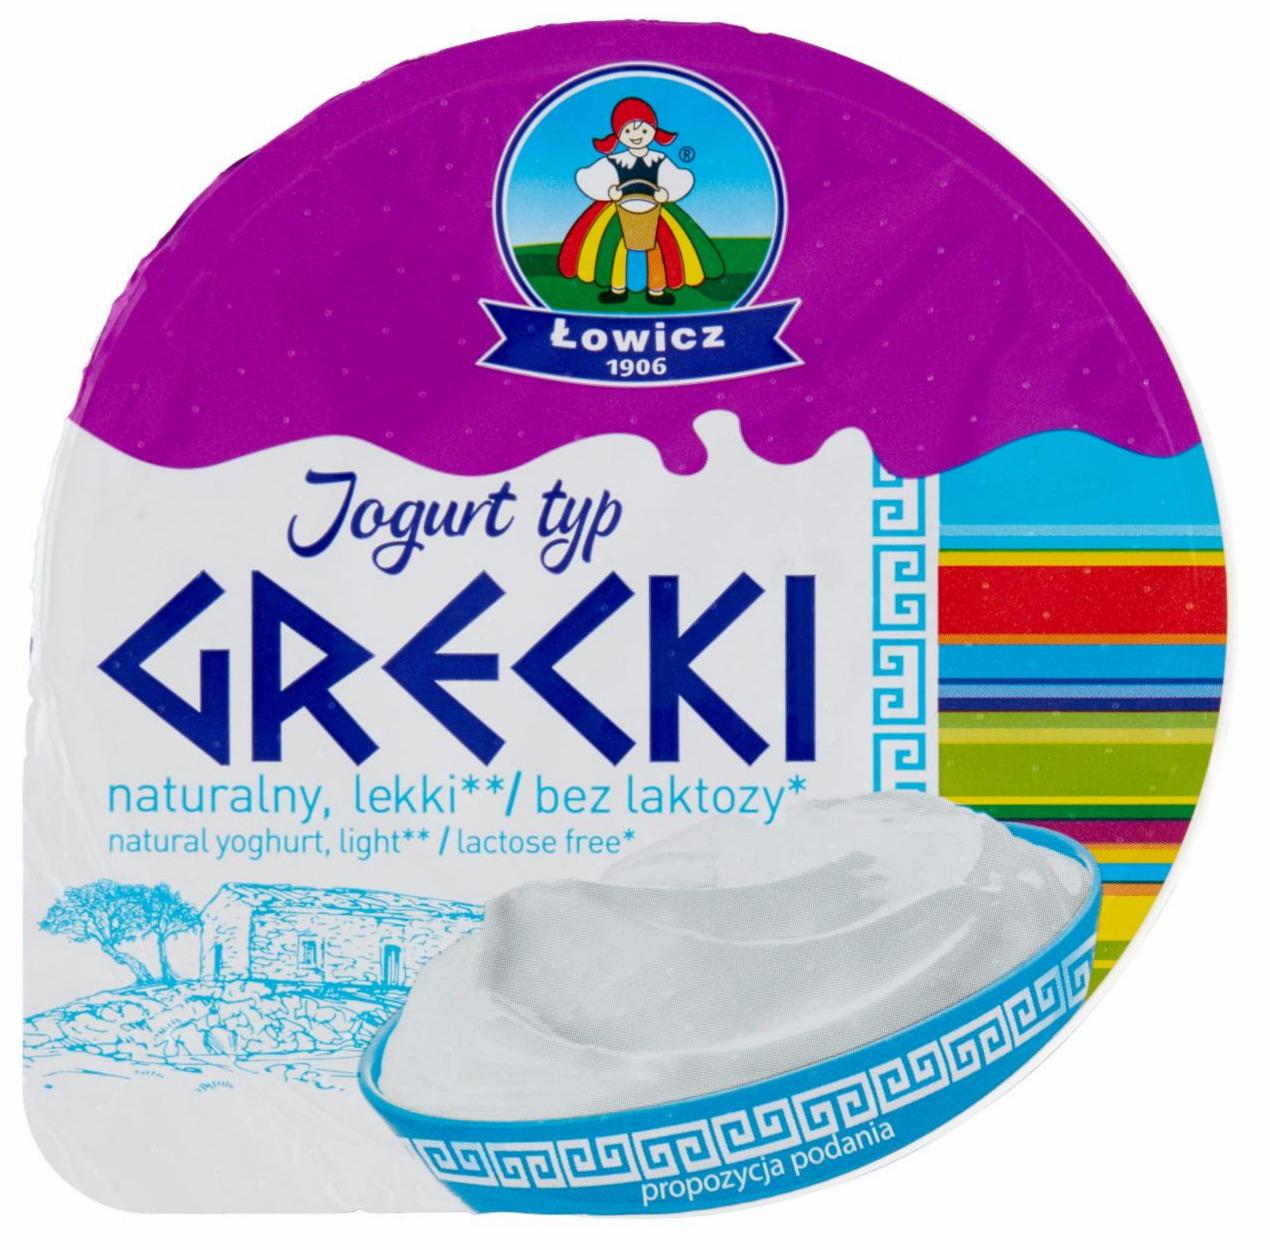 Zdjęcia - Jogurt naturalny typ grecki lekki bez laktozy Łowicz